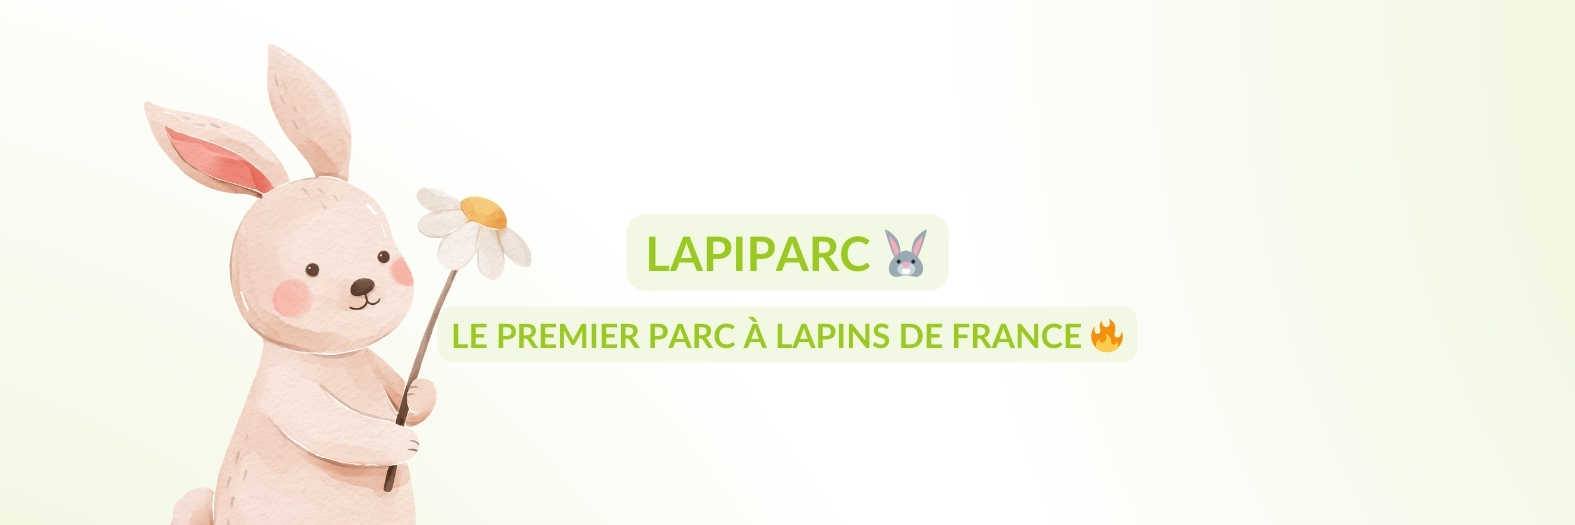 Découvrez le Premier LAPIPARC de France : Une ferme pédagogique innovante pour Lapins et Cochons d’Inde à Rouen